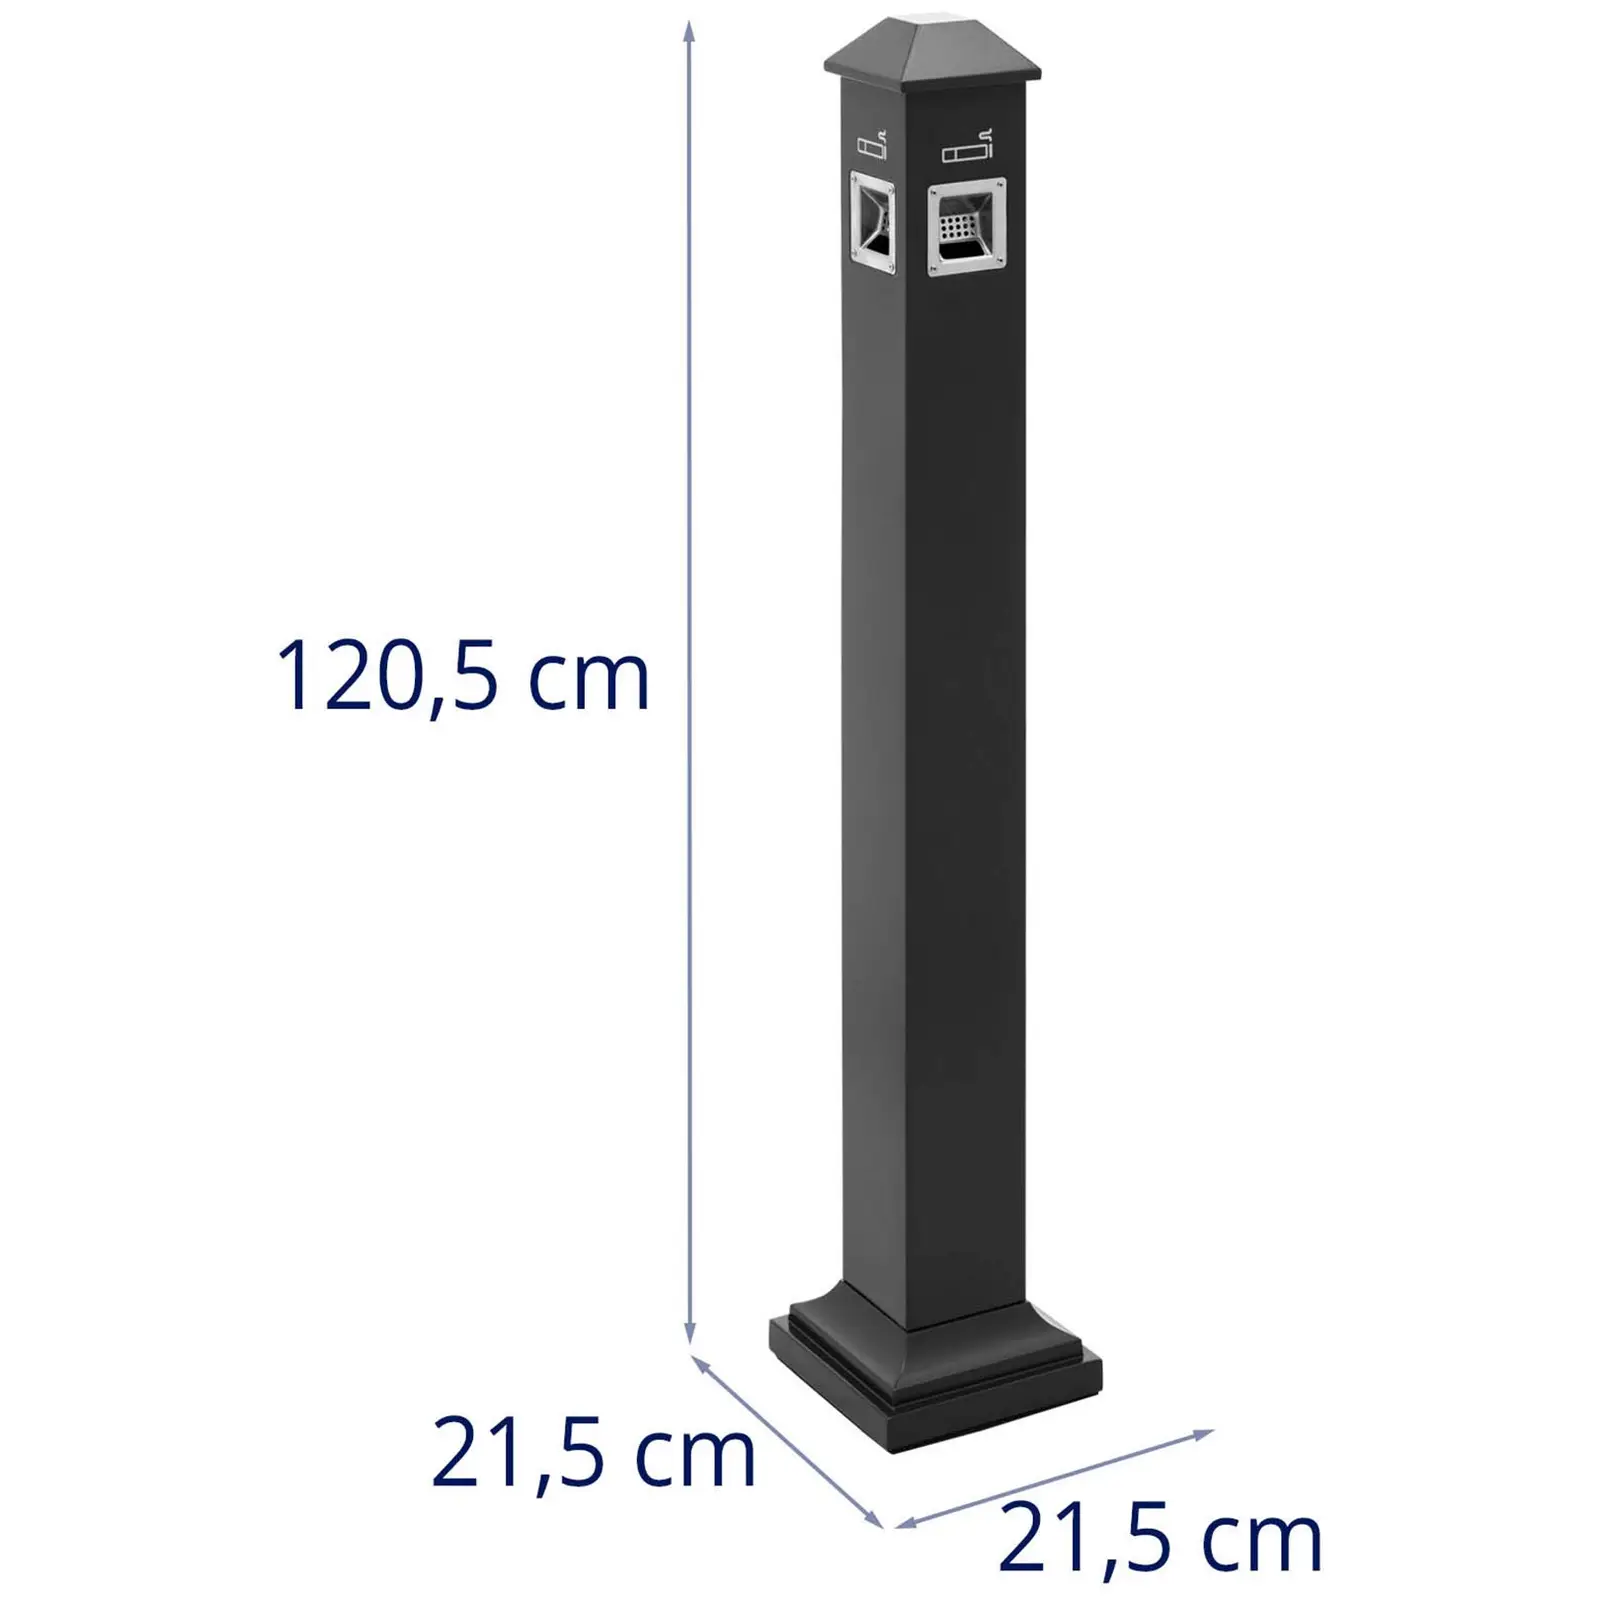 Posacenere da terra - Con pattumiera integrata - Area esterna e interna - 21.5 x 21.5 x 120.5 cm